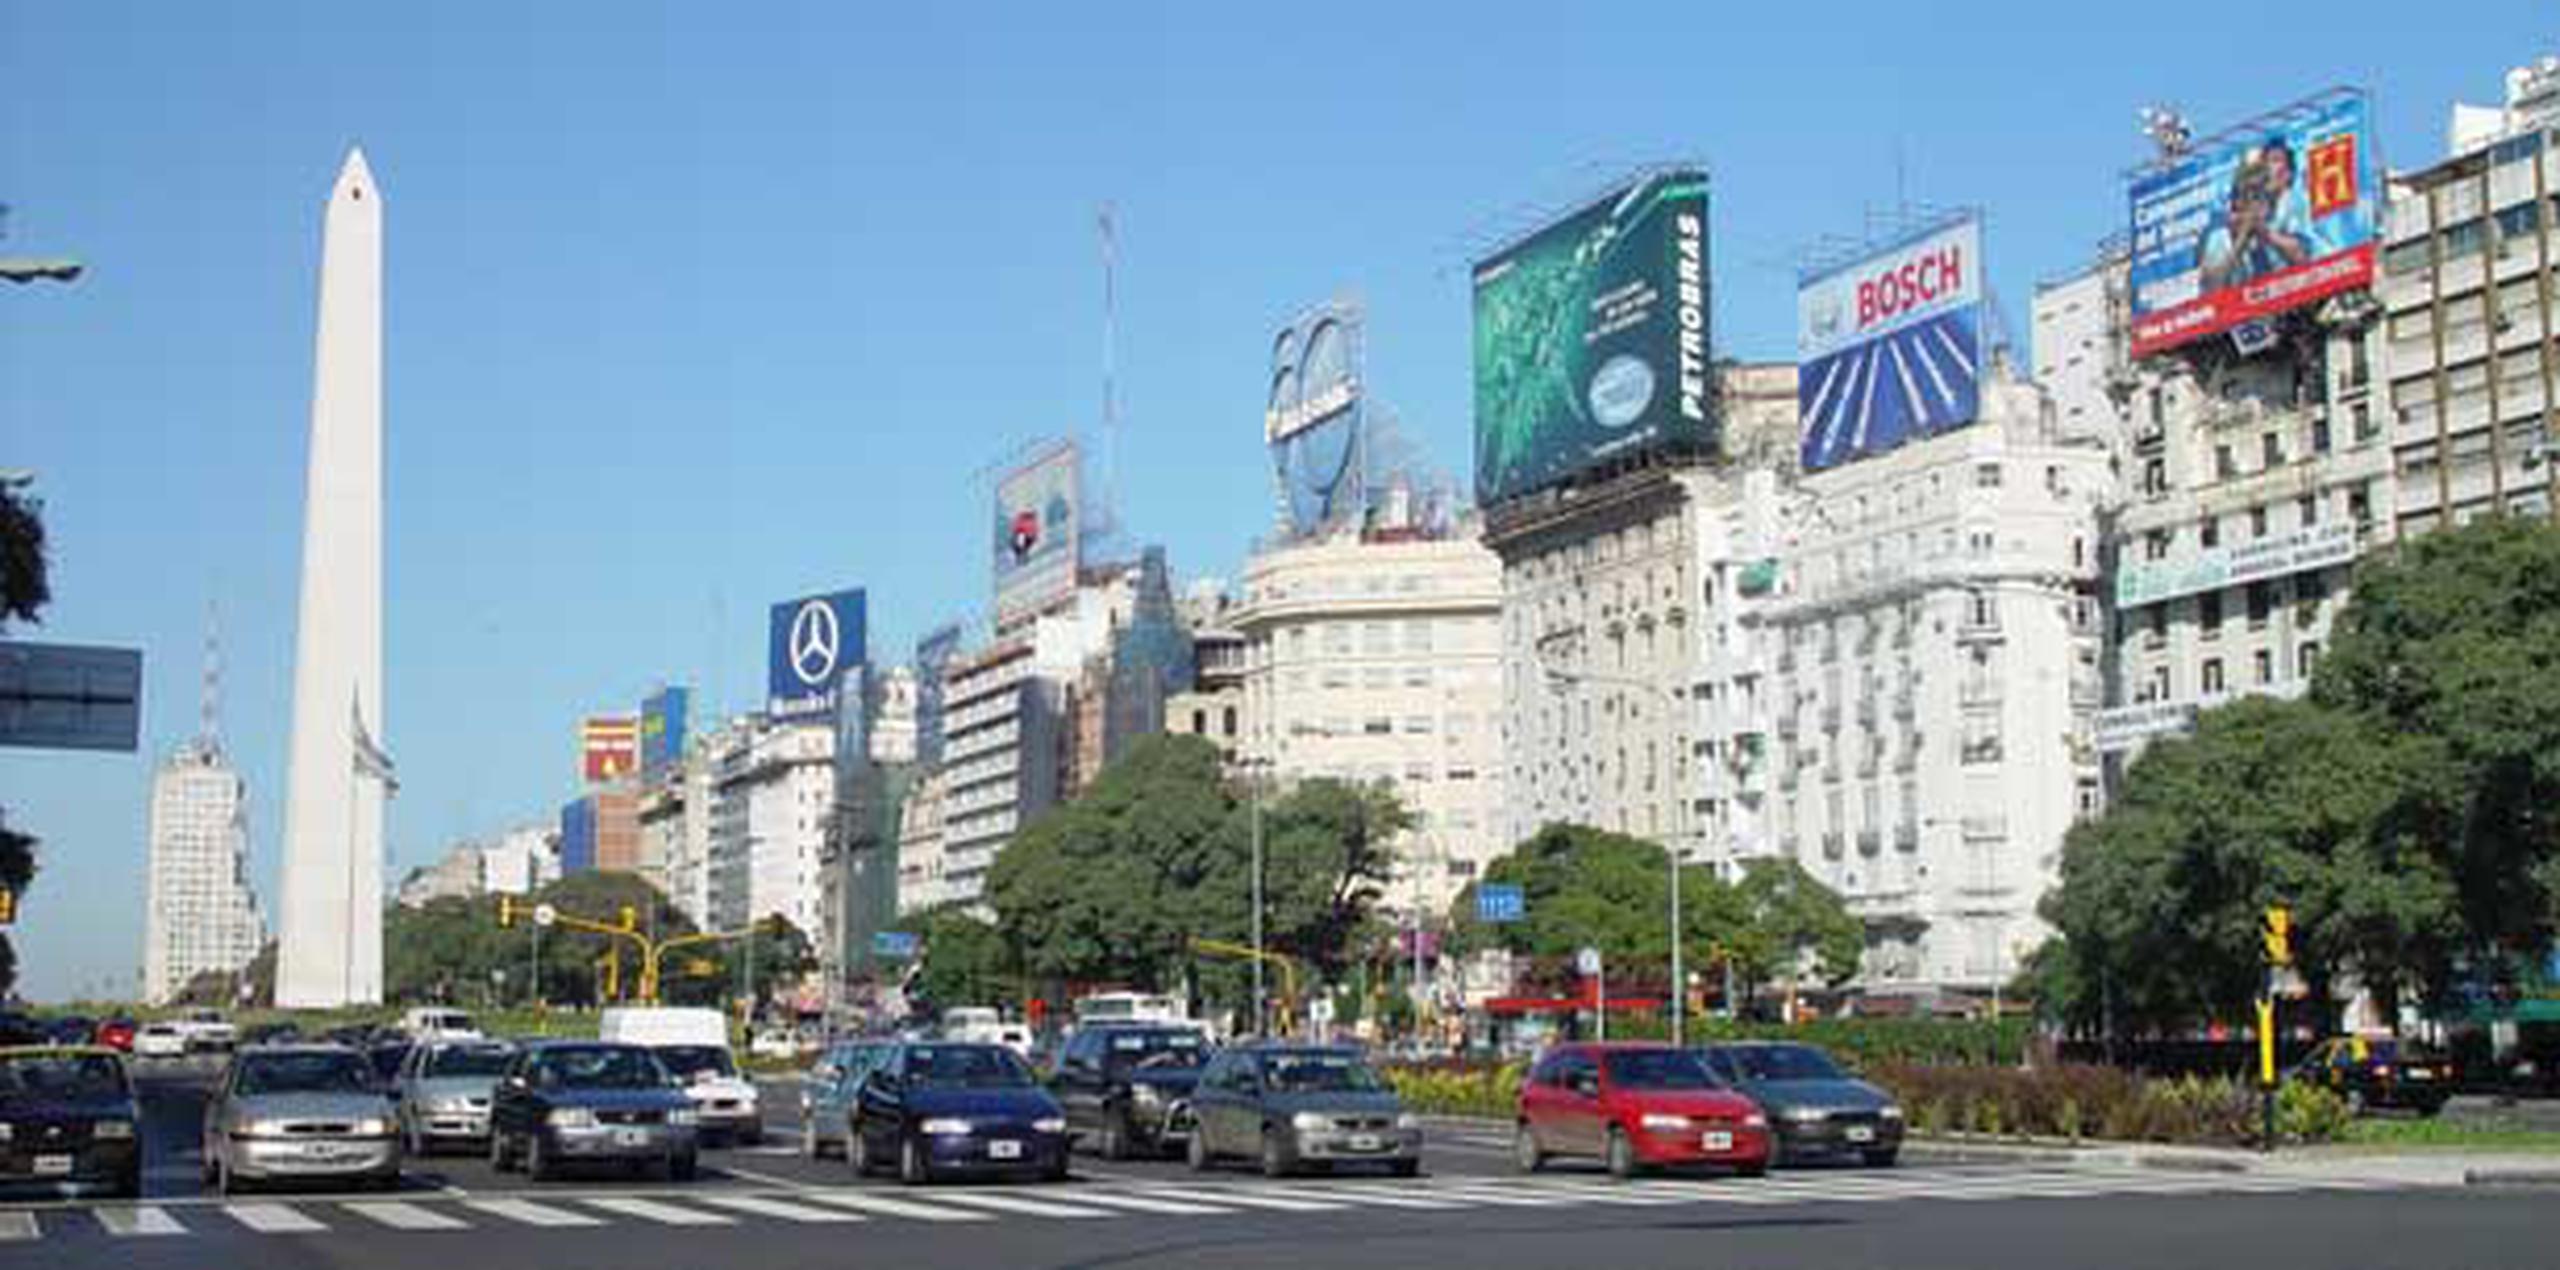 El incidente ocurrió en un estacionamiento soterrado en Buenos Aires. (Archivo)